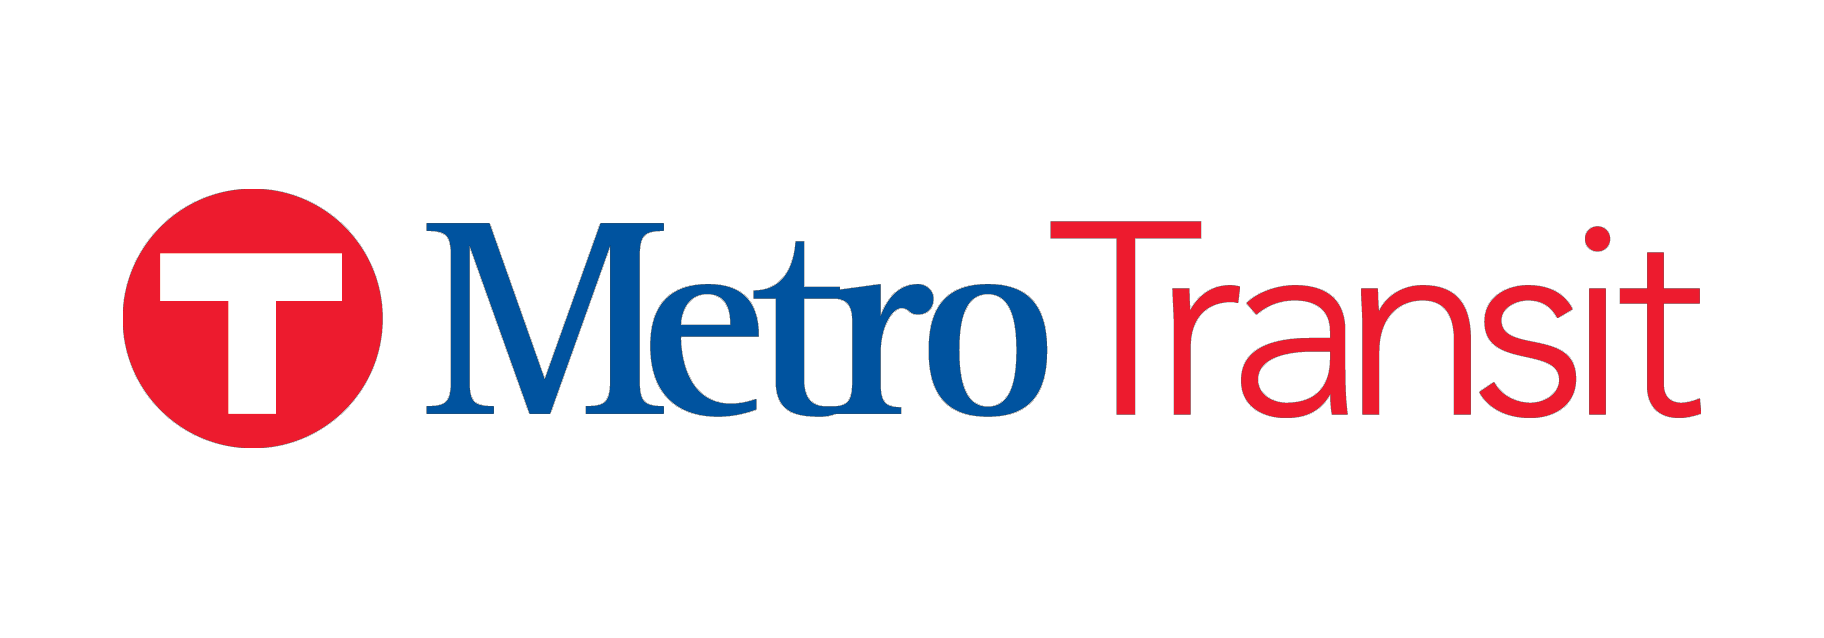 minneapolis metro transit logo